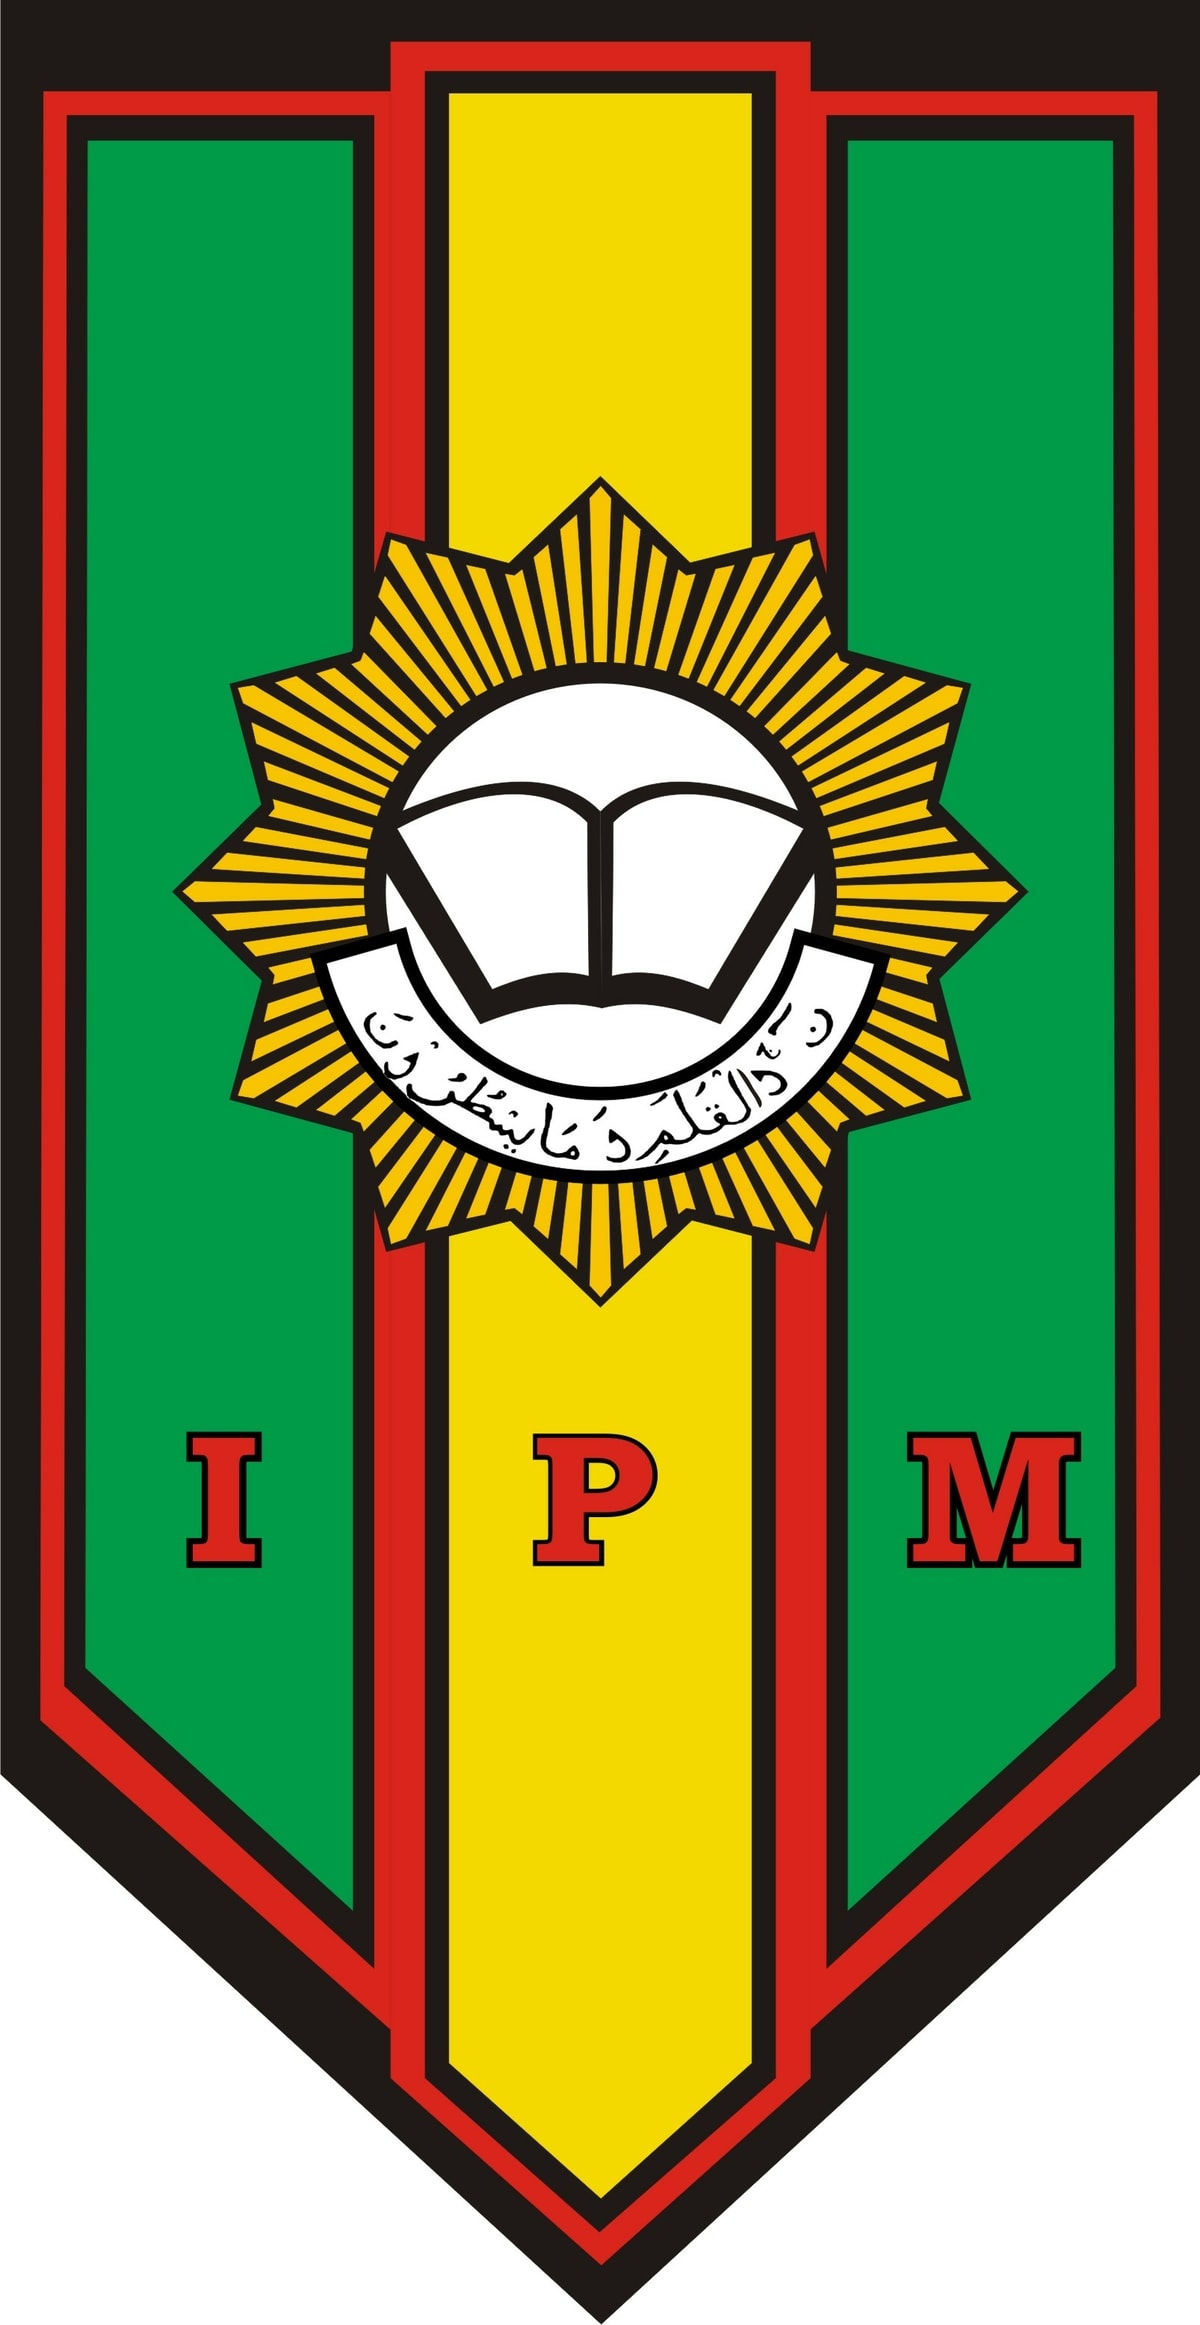 Lambang dan logo IPM (Ikatan Pelajar Muhammadiyah)